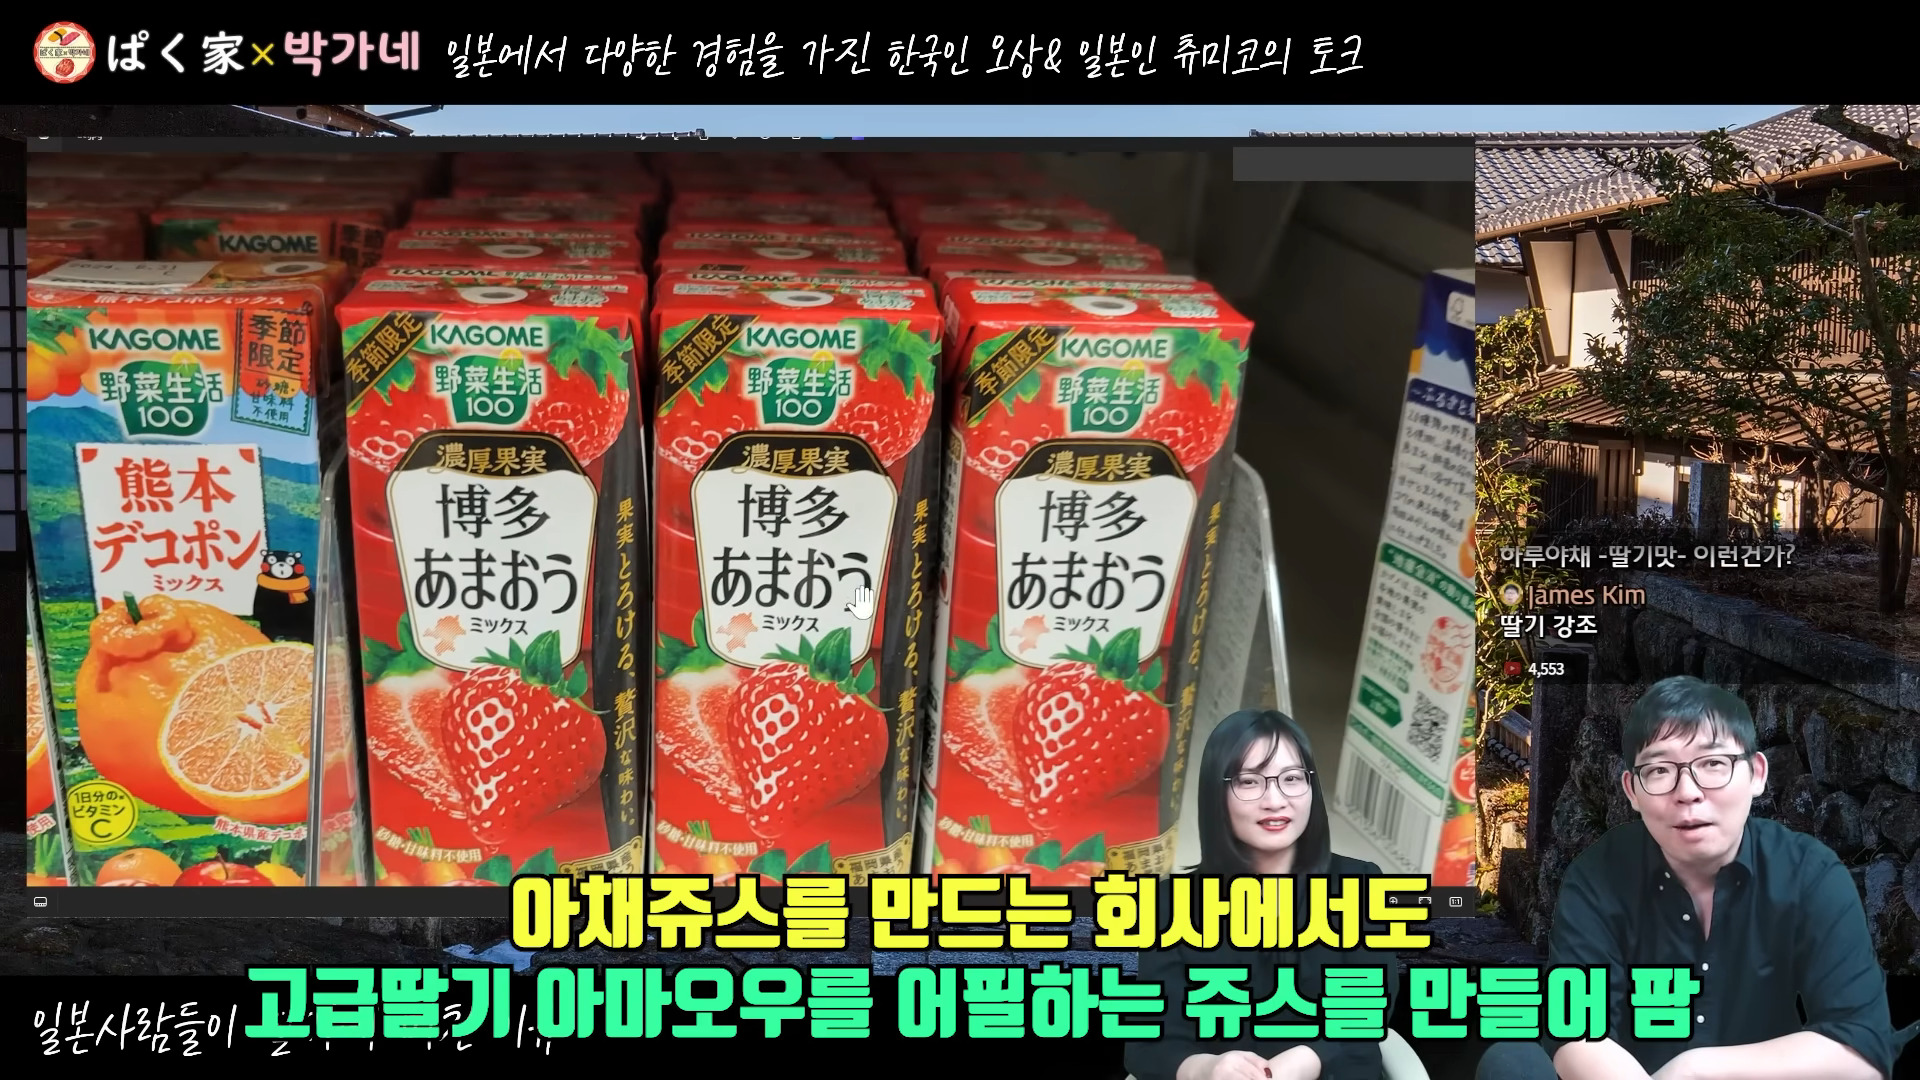 일본사람들이 딸기에 집착하는 이유 - YouTube - 0-8-47.jpg